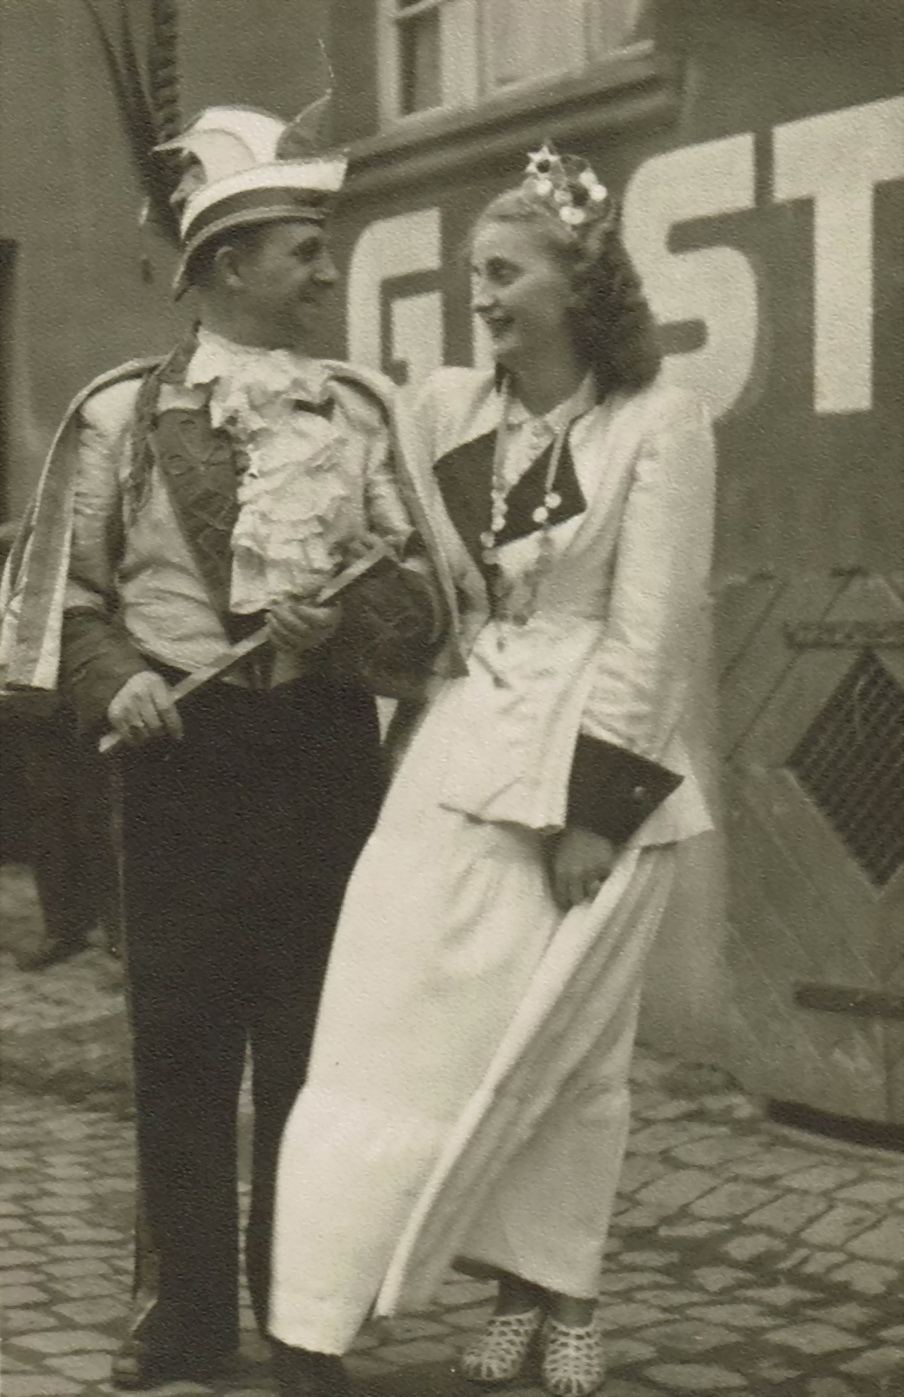 Prinzenpaar 1950